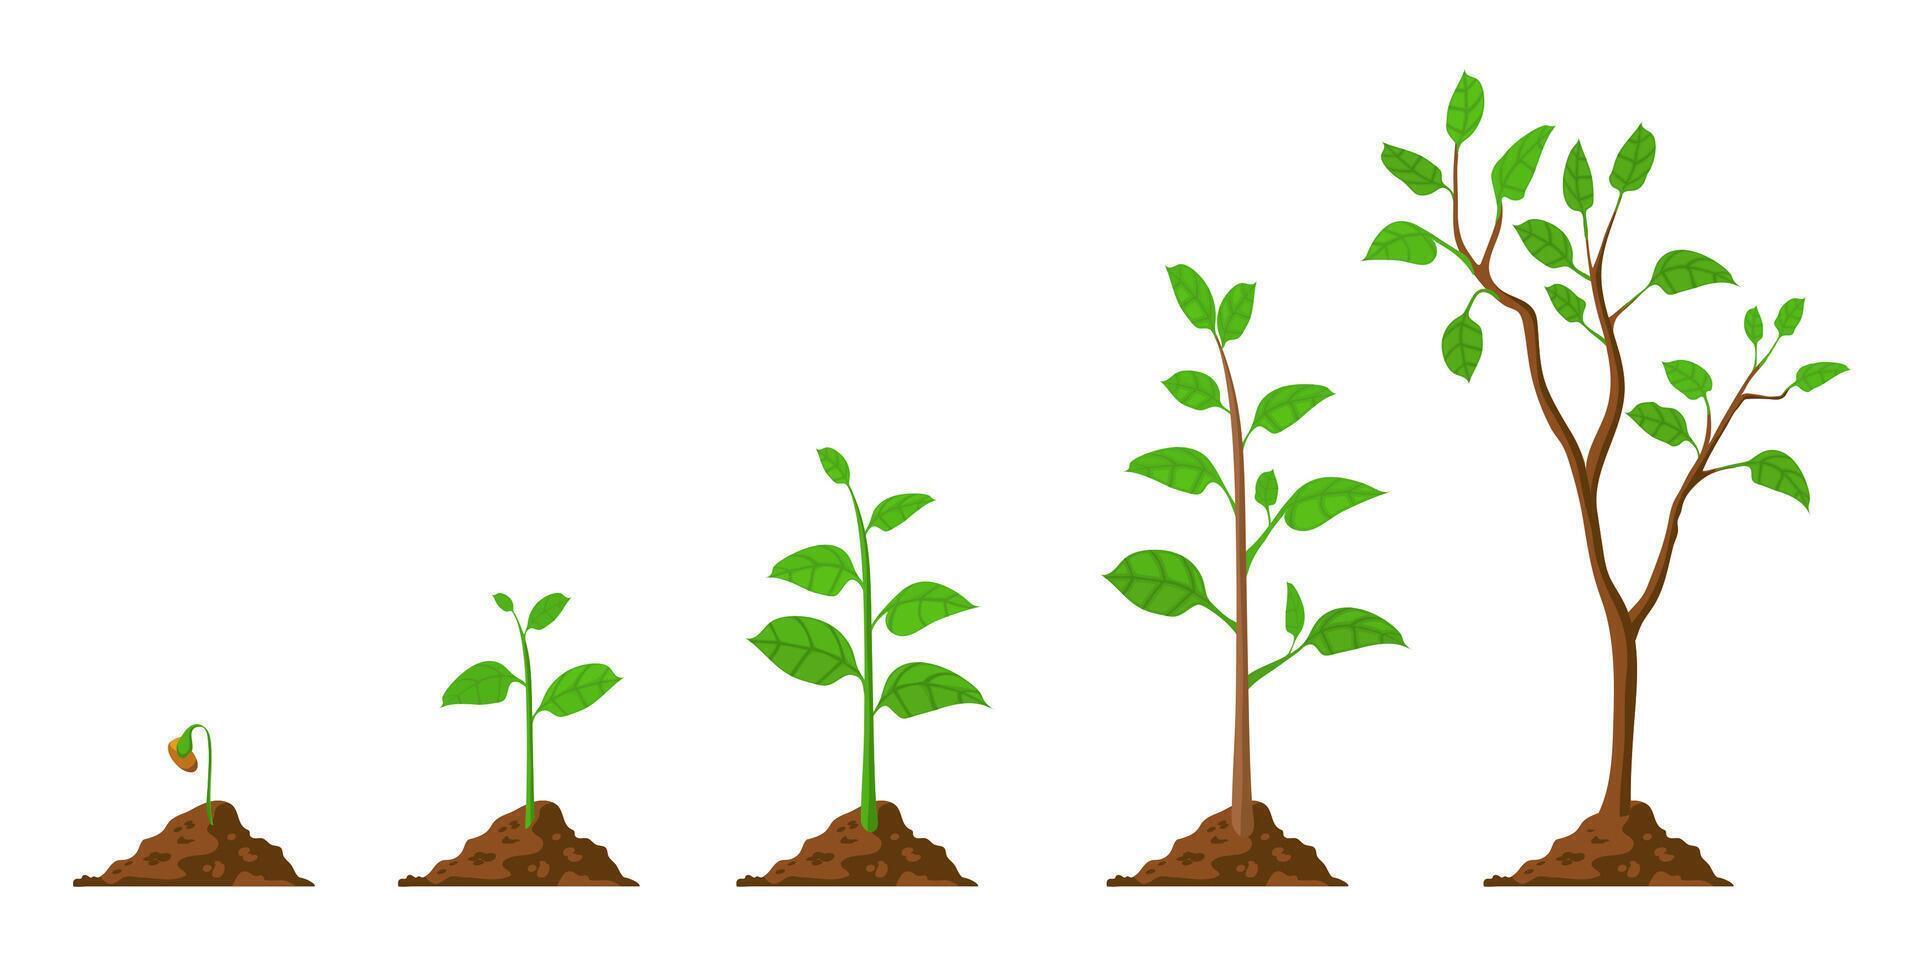 boom groeien. fabriek groei van zaad naar jonge boom met groen blad. stadia van zaailing en groeit bomen in bodem. tuinieren werkwijze vector concept